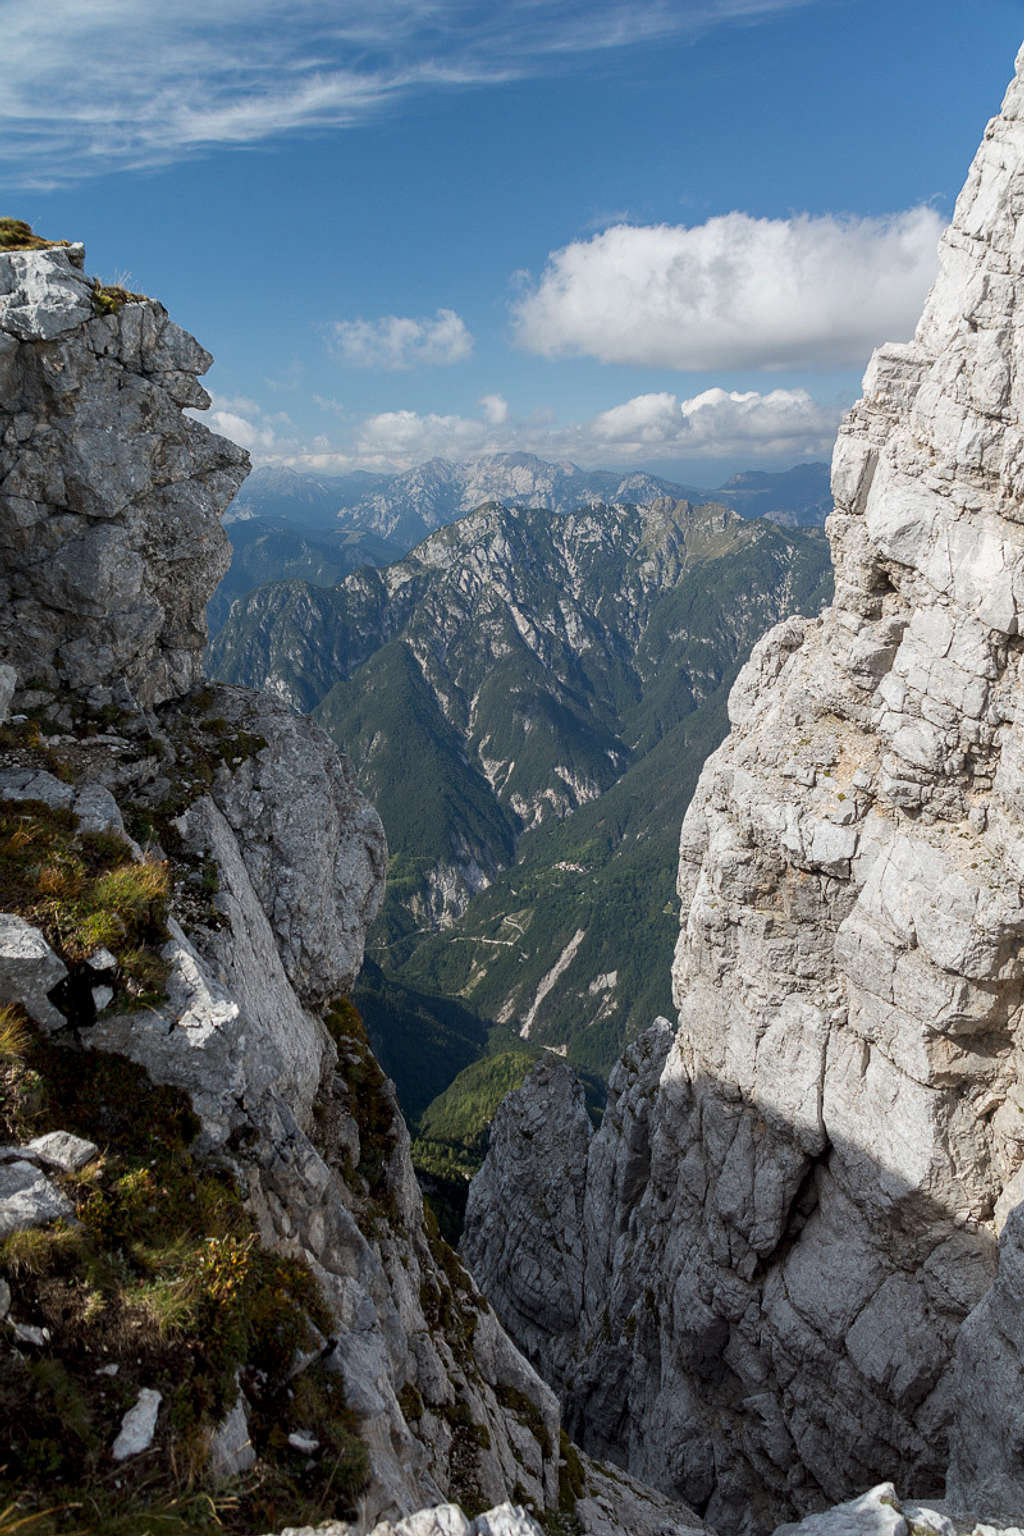 Saddle view towards Jôf di Dogna and Monte Schenone